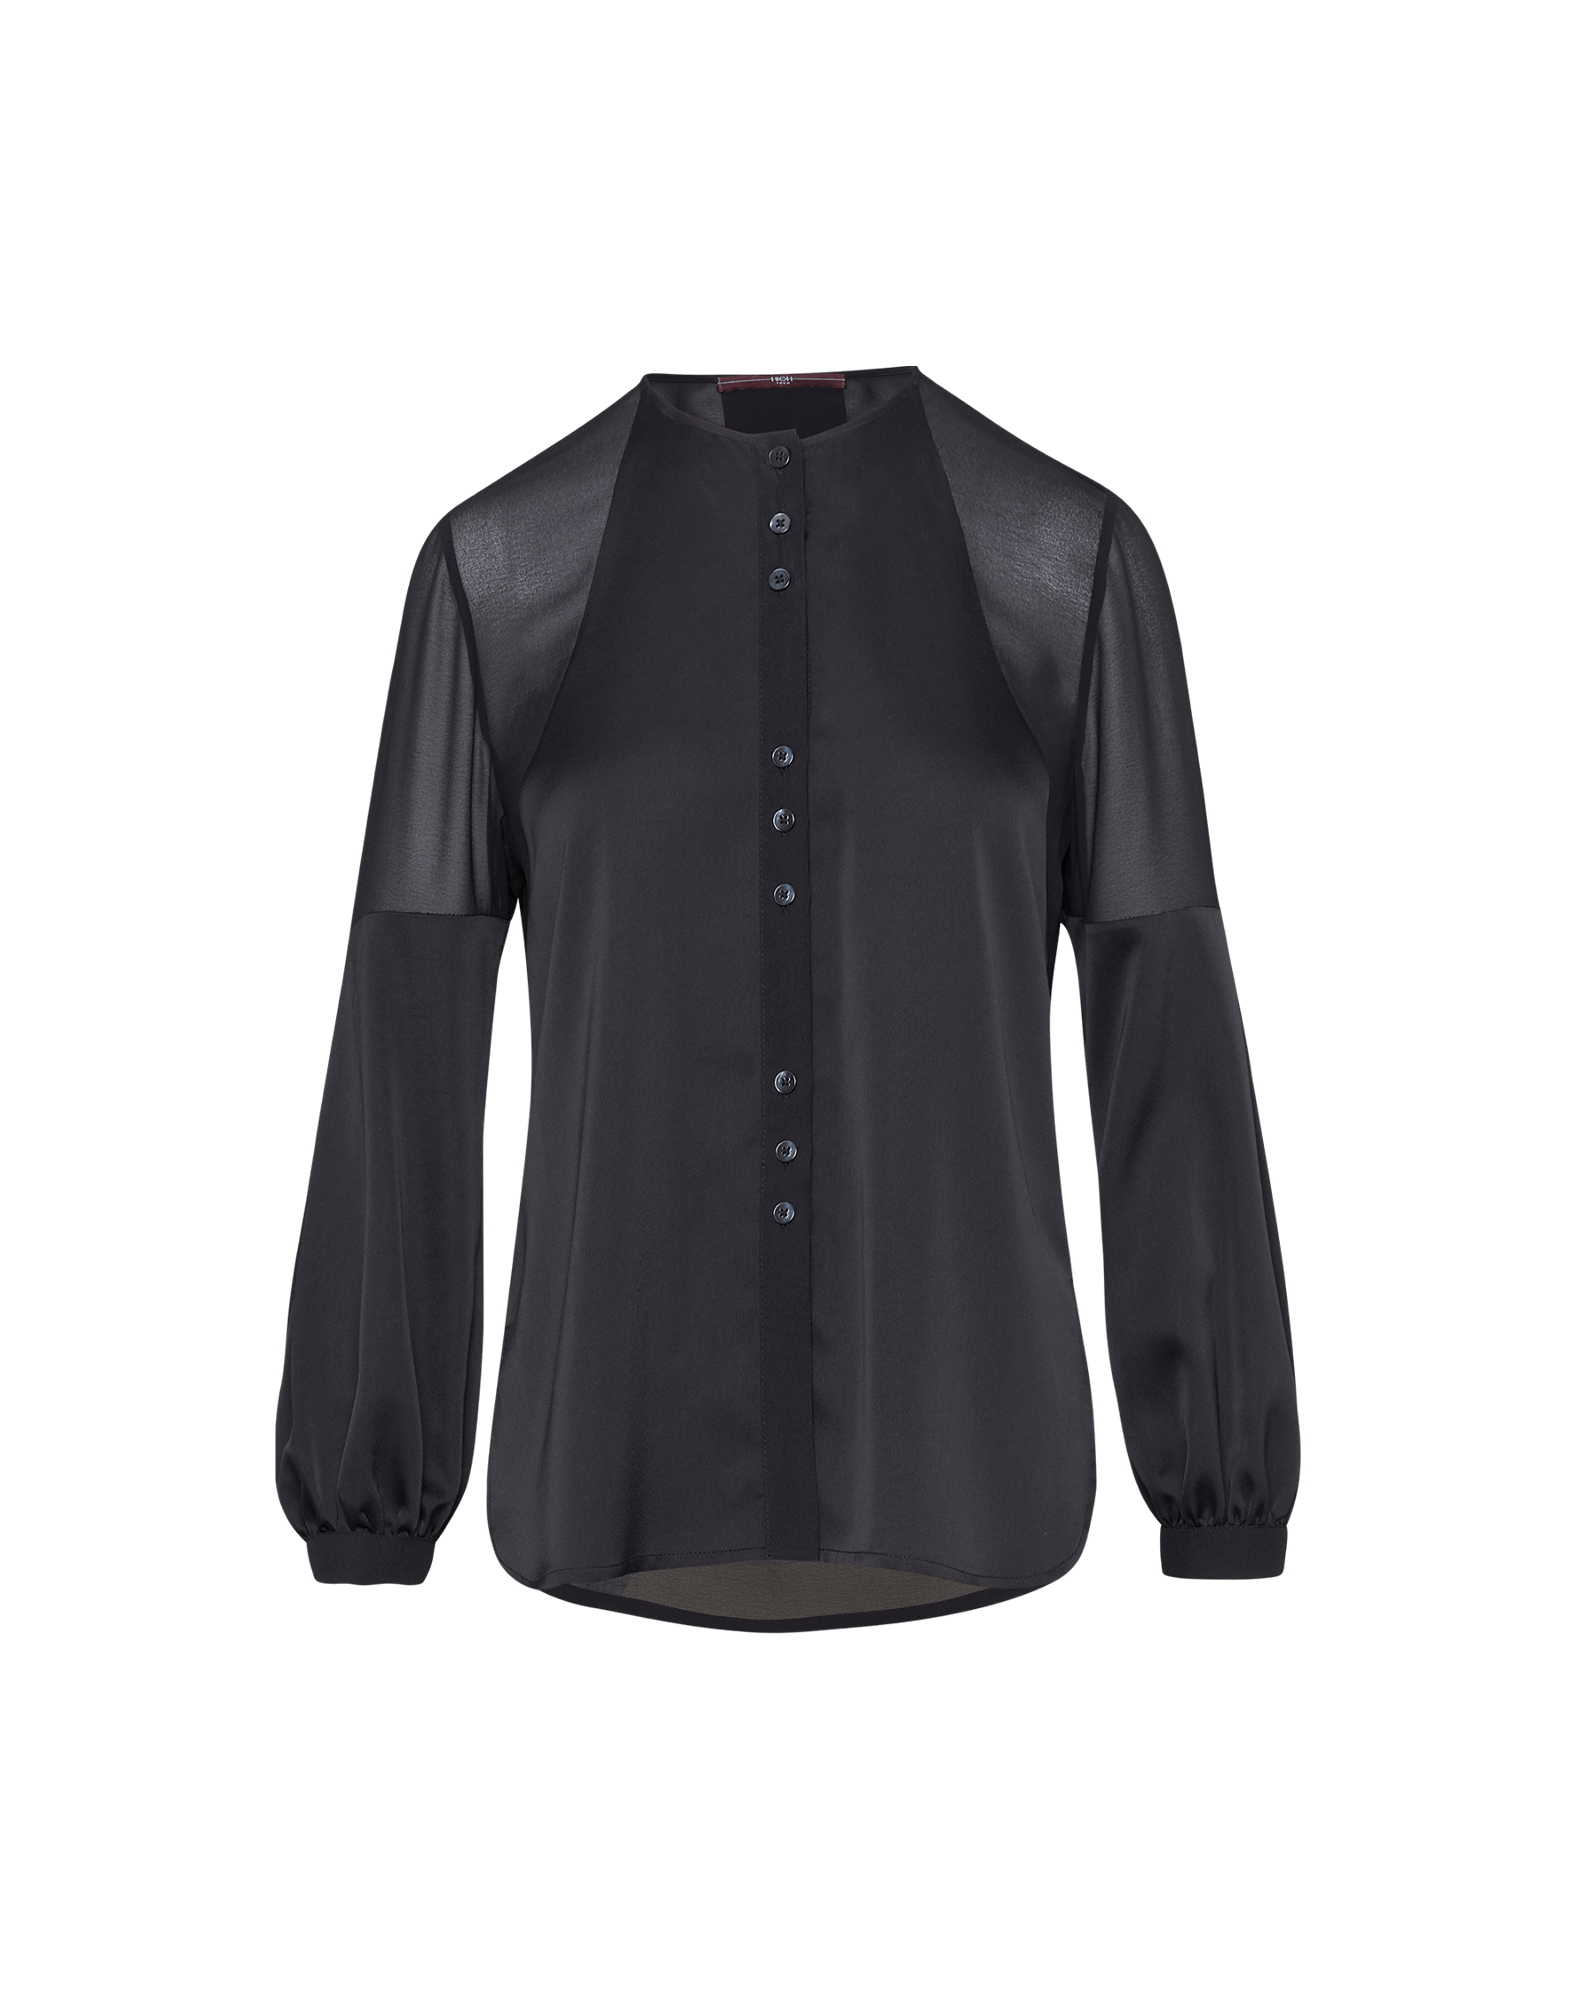 SUPPOSE: Schwarze Bluse aus Crêpe und Satin technischem transparentem